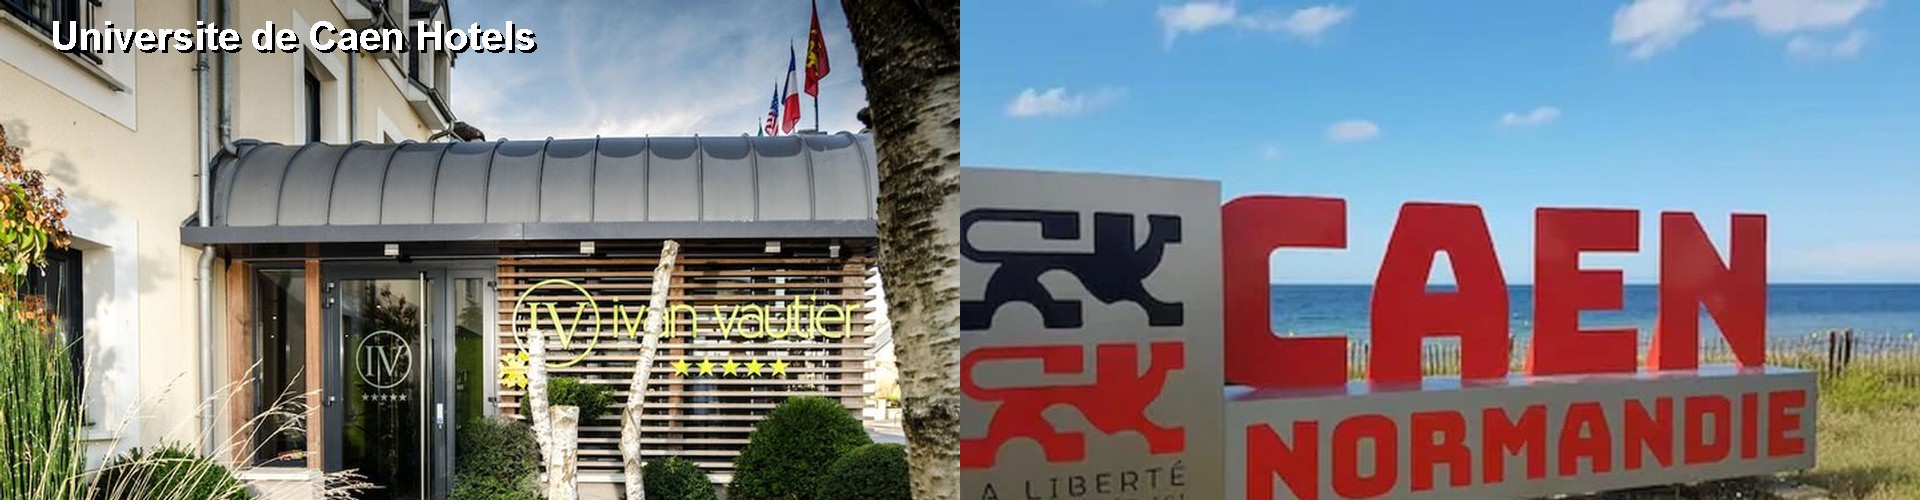 5 Best Hotels near Universite de Caen